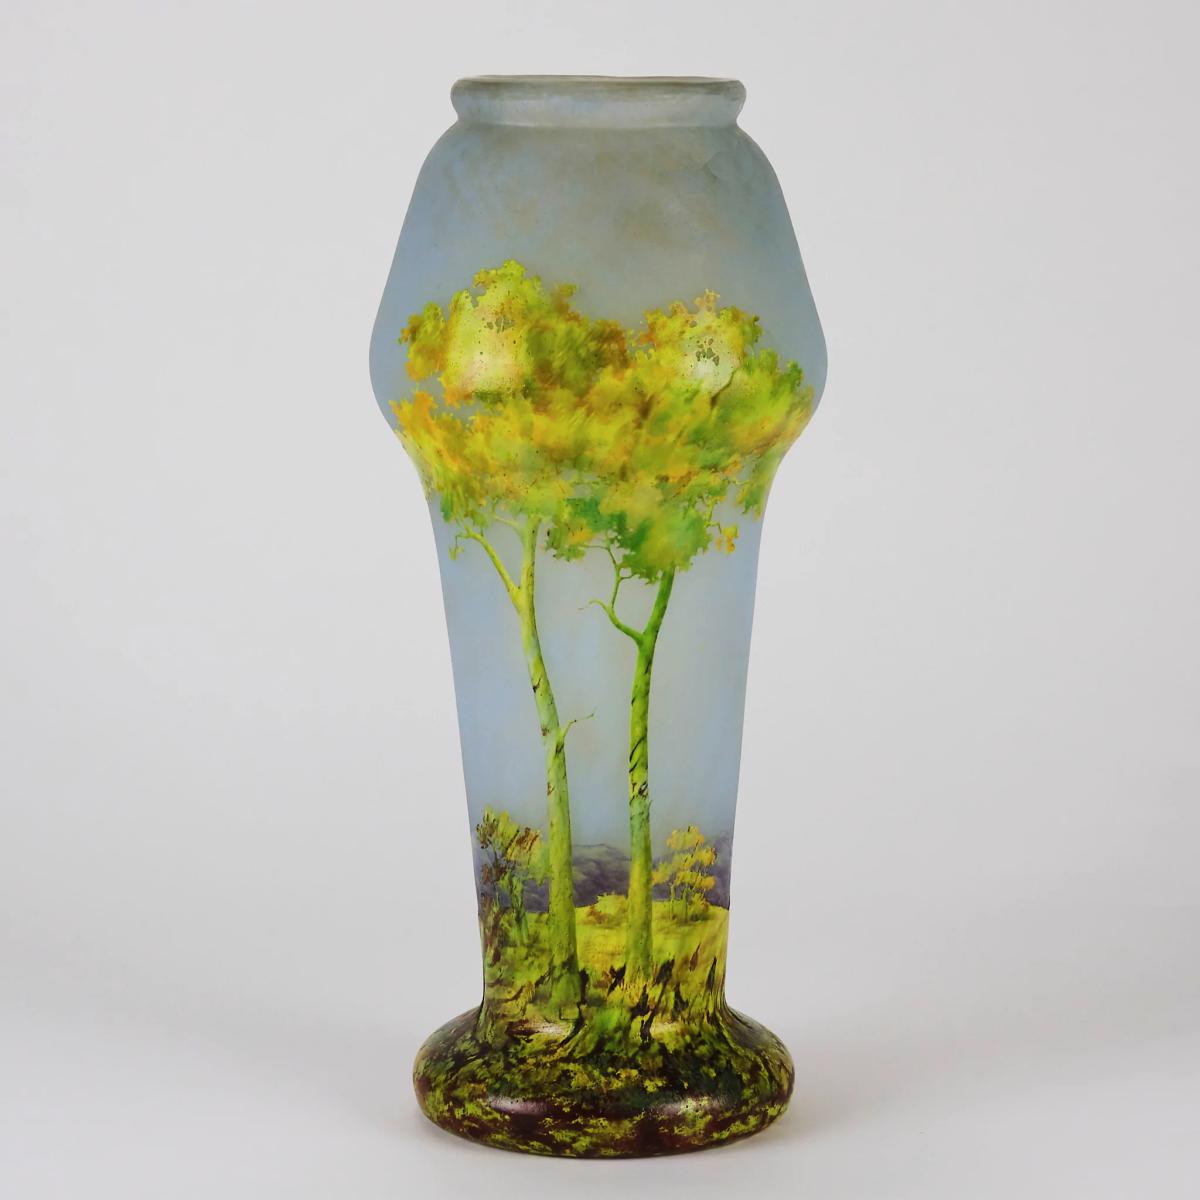 20th Century Cameo Glass Landscape Vase Entitled "Paysage d'Été" by Daum Frères - Circa 1900